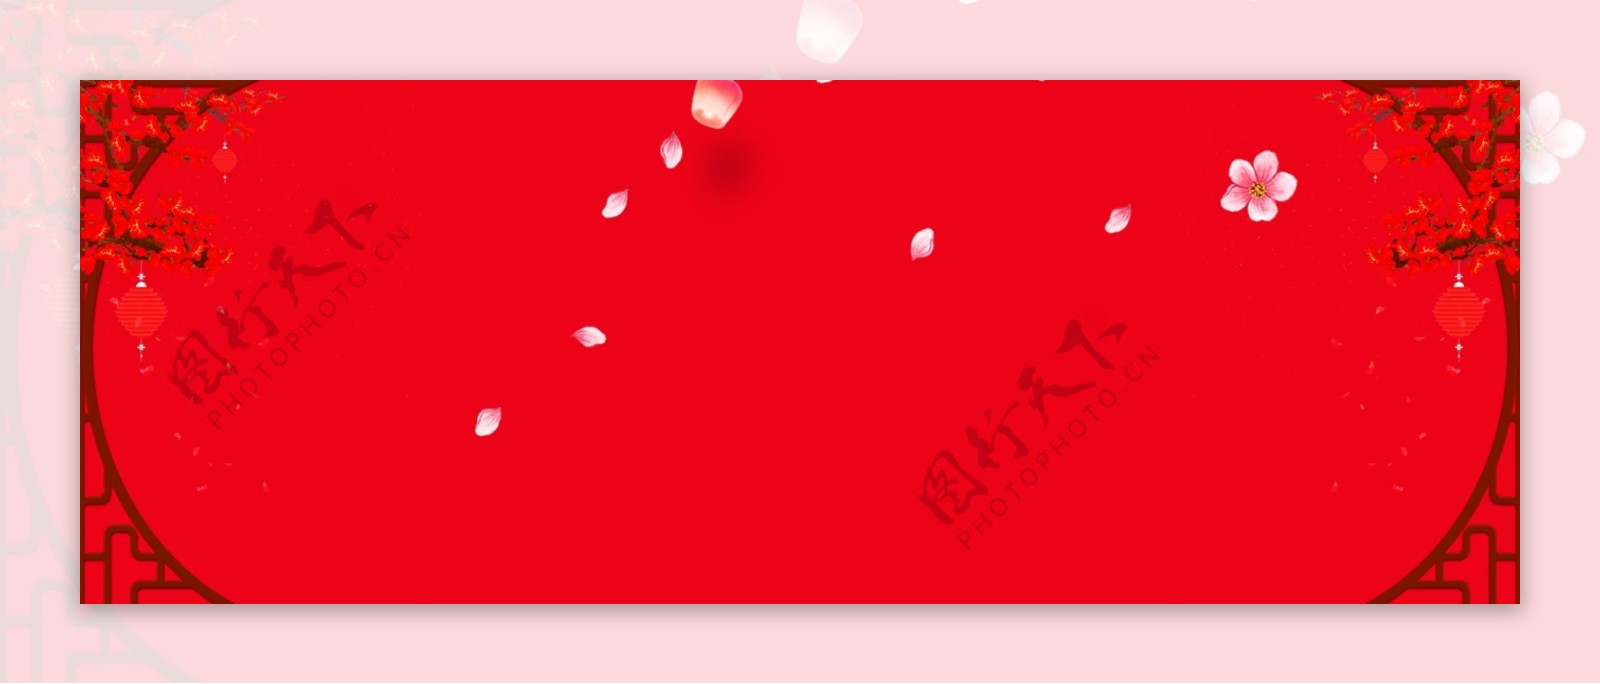 春节红色主题海报